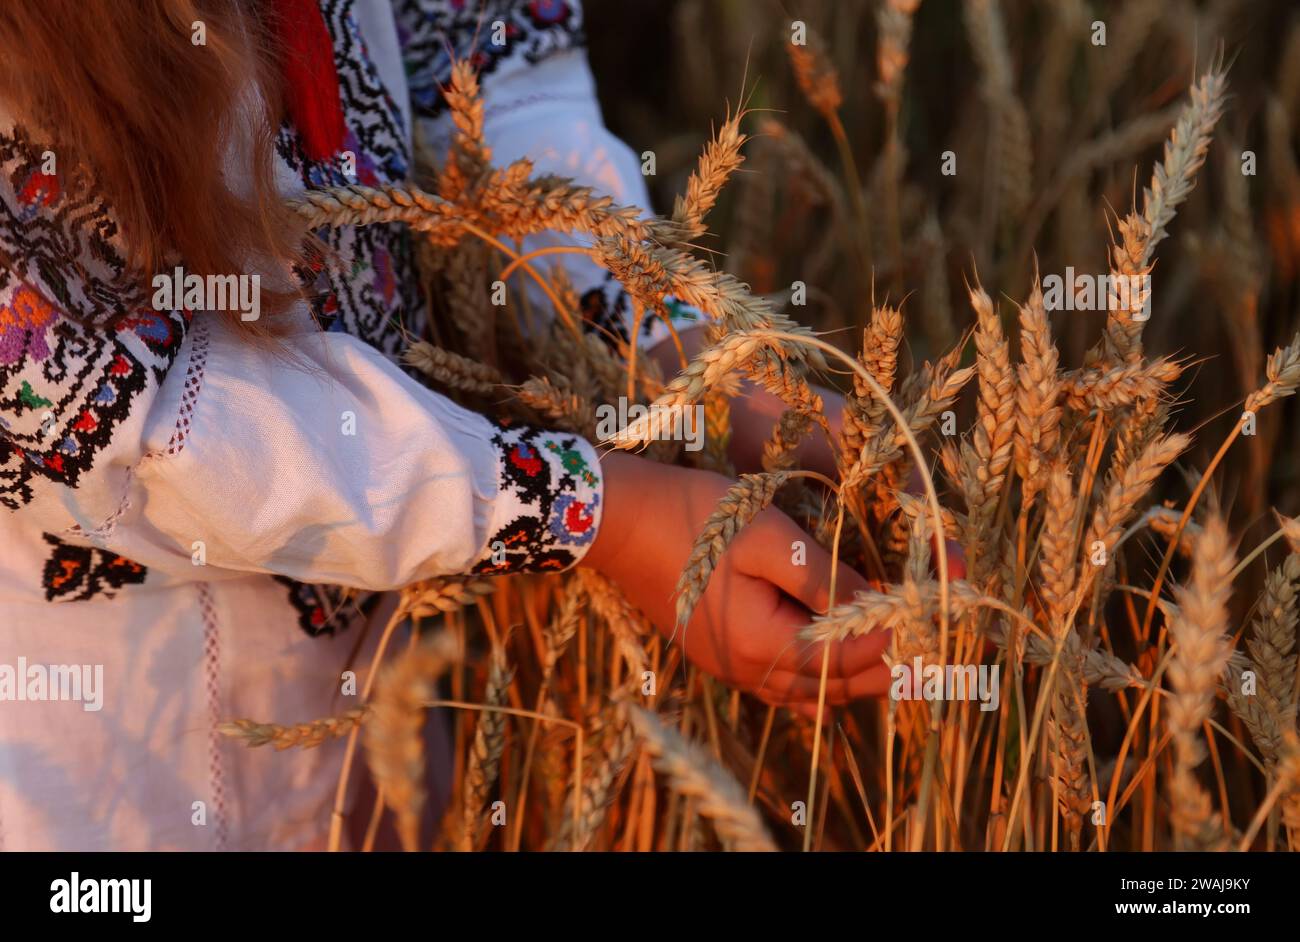 Weizenspikelets in den Händen eines Mädchens in einem gestickten Hemd. Hände Nahaufnahme fokussieren auf Maisohren. Unabhängigkeitstag der ukraine, Verfassungsflagge Stockfoto